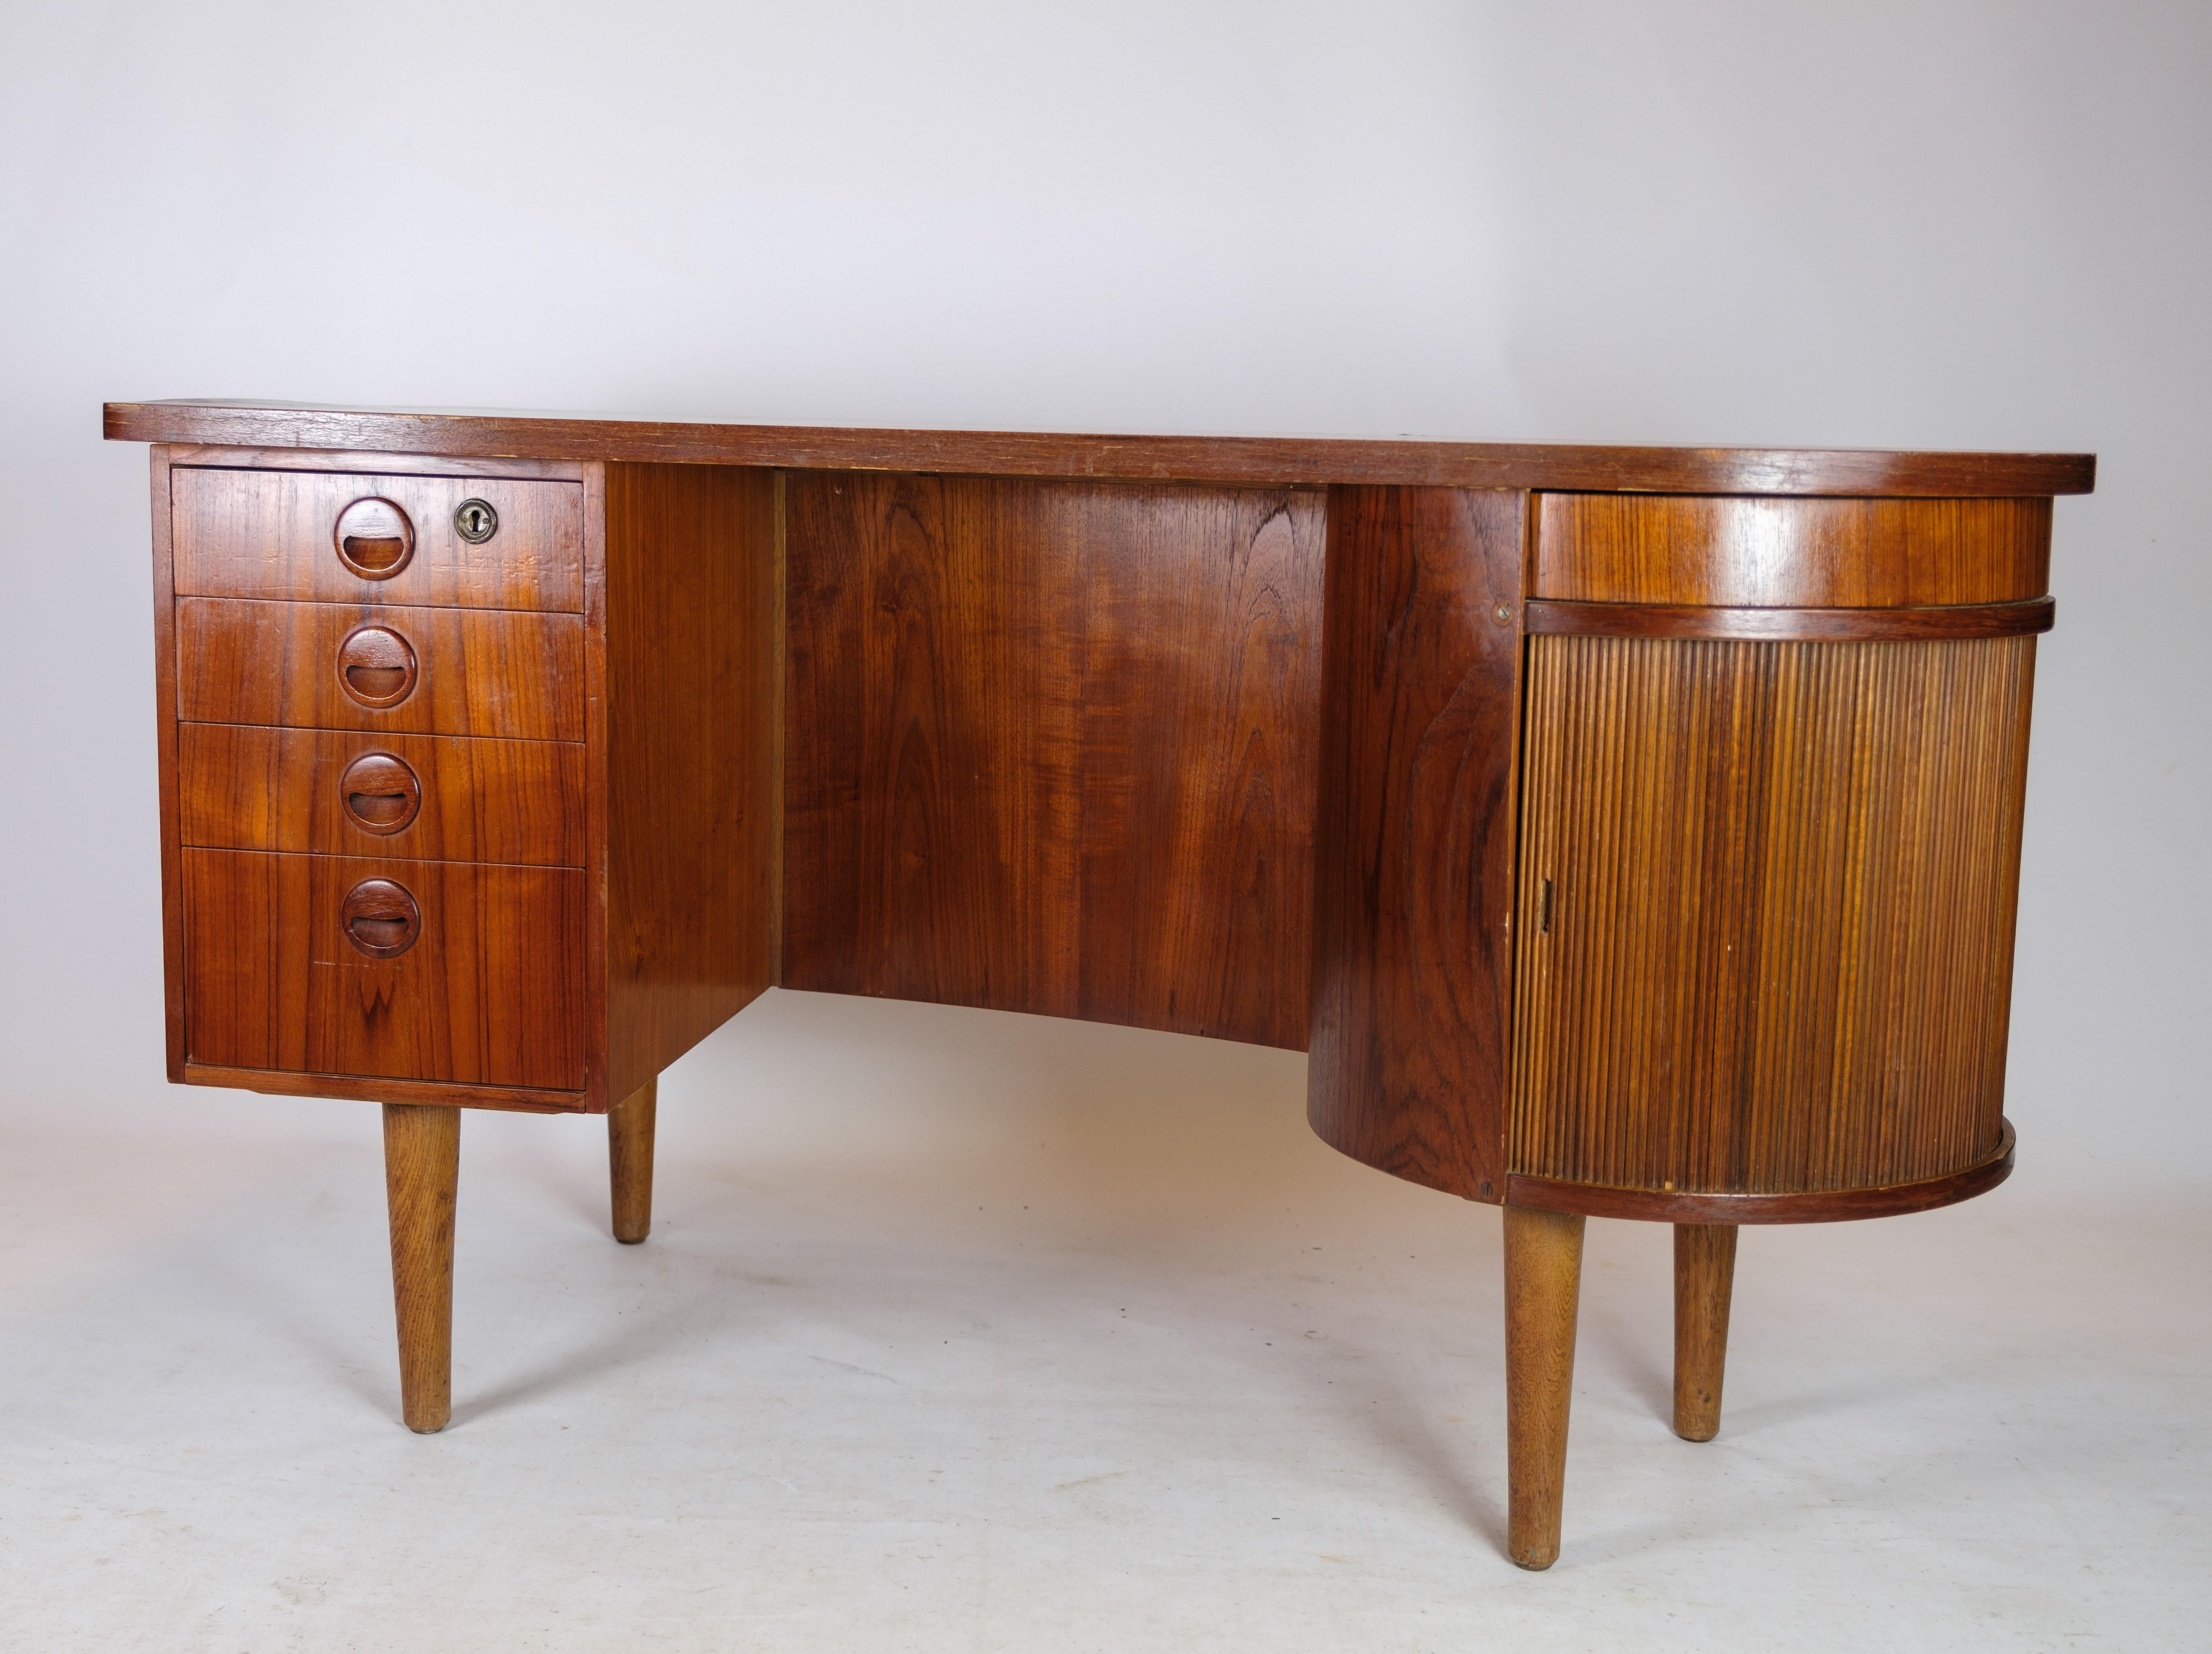 Desk in Teak wood model 54 by Kai Kristiansen and Feldballes furniture from 1954 For Sale 5